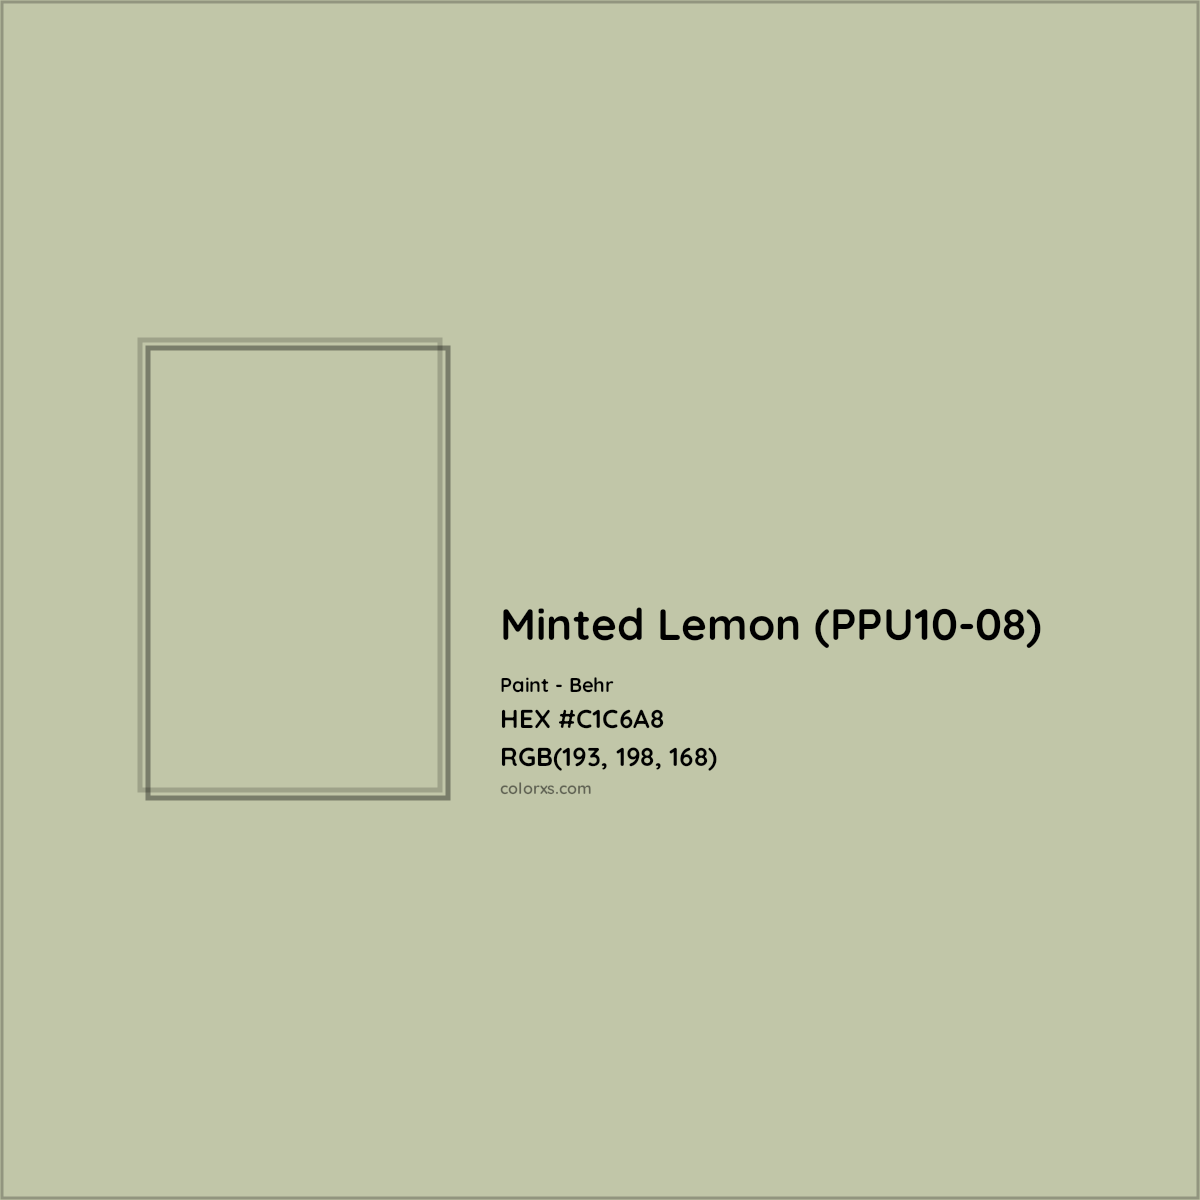 HEX #C1C6A8 Minted Lemon (PPU10-08) Paint Behr - Color Code